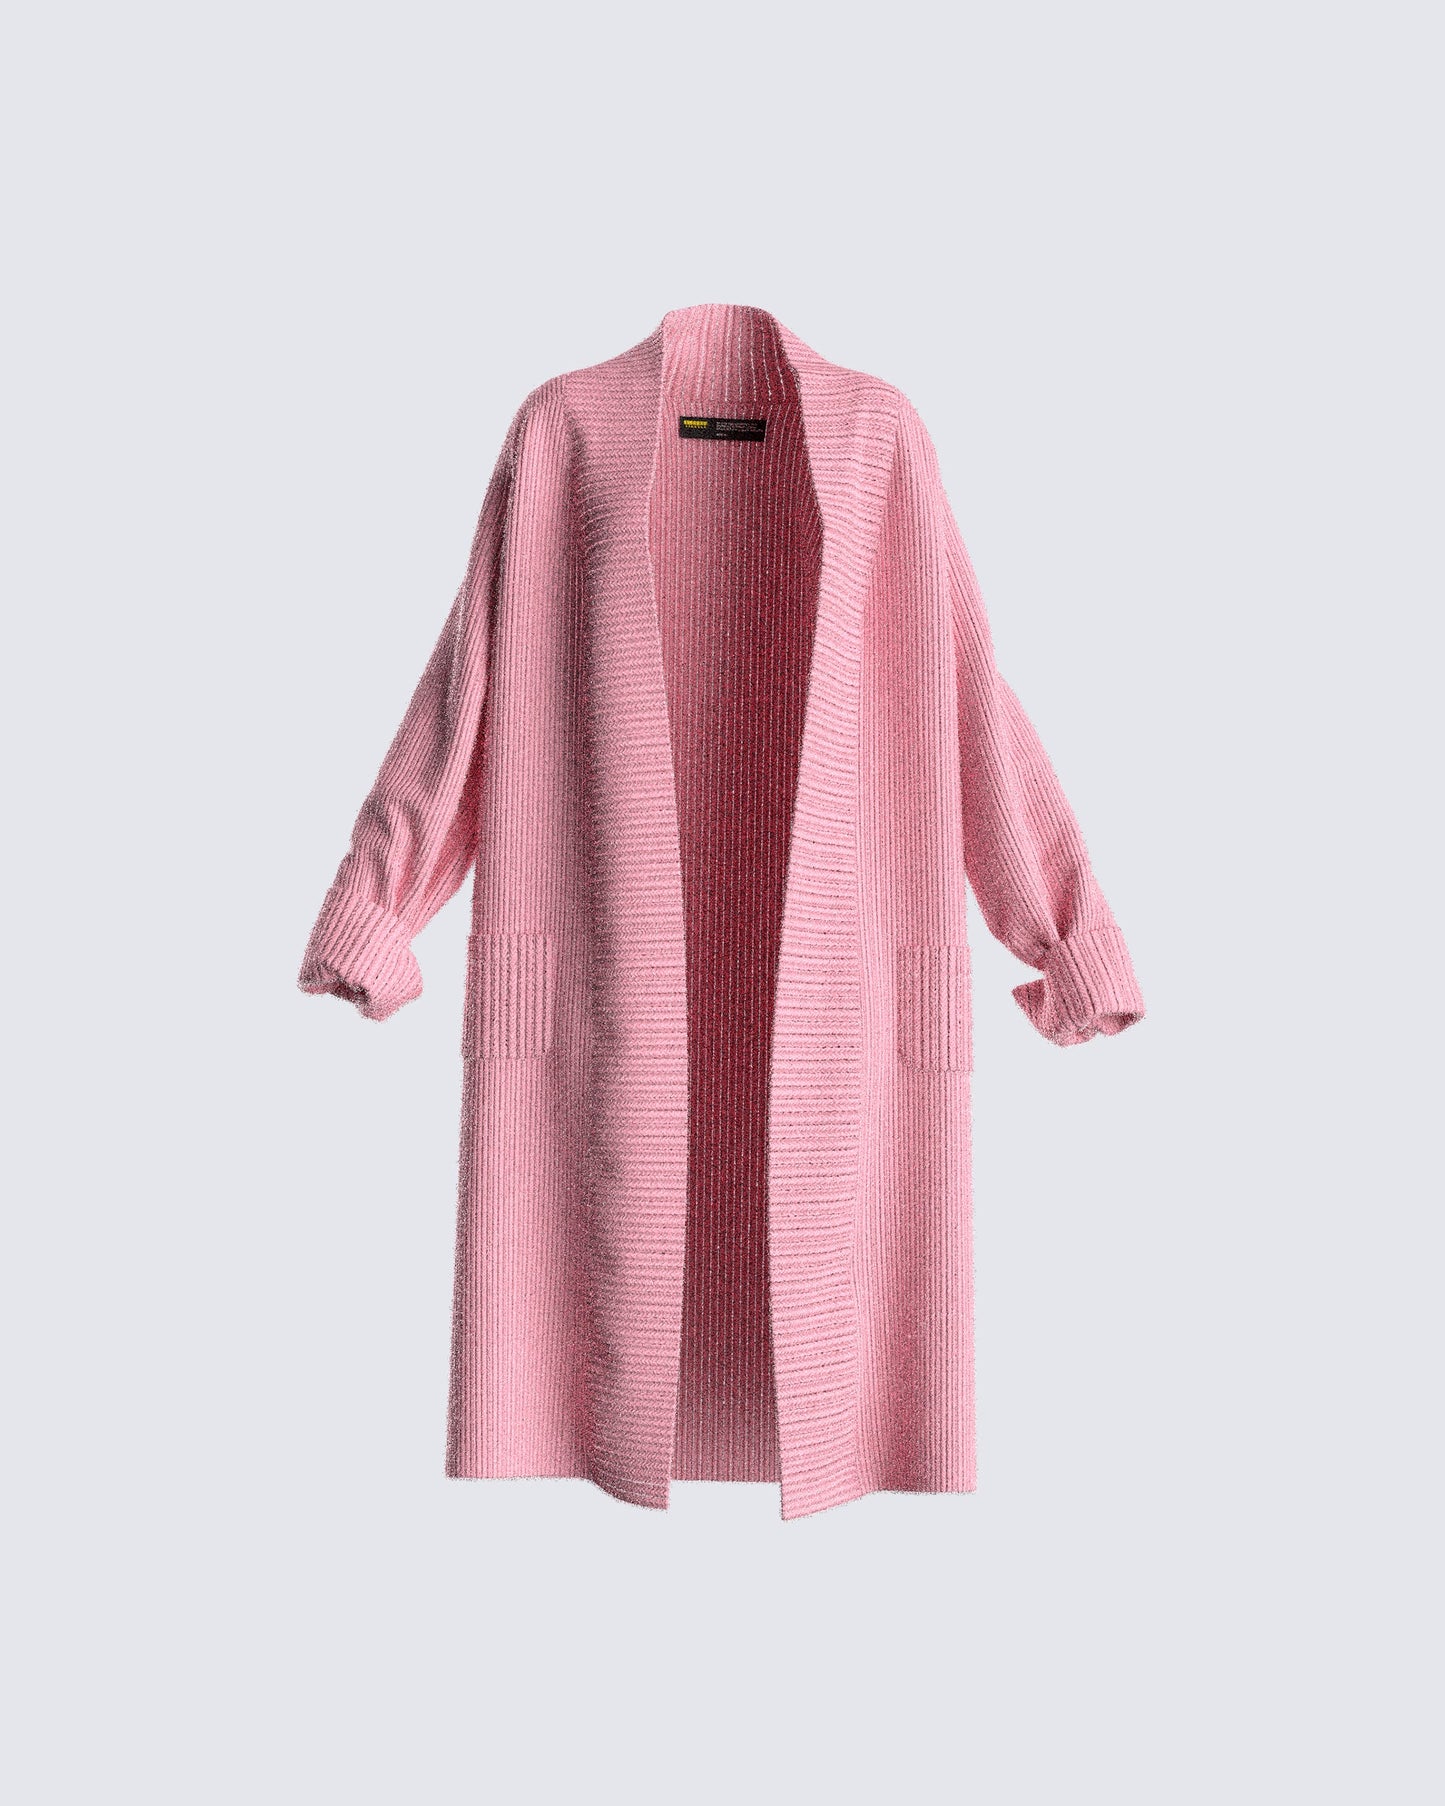 Lumi Pink Knit Cardigan